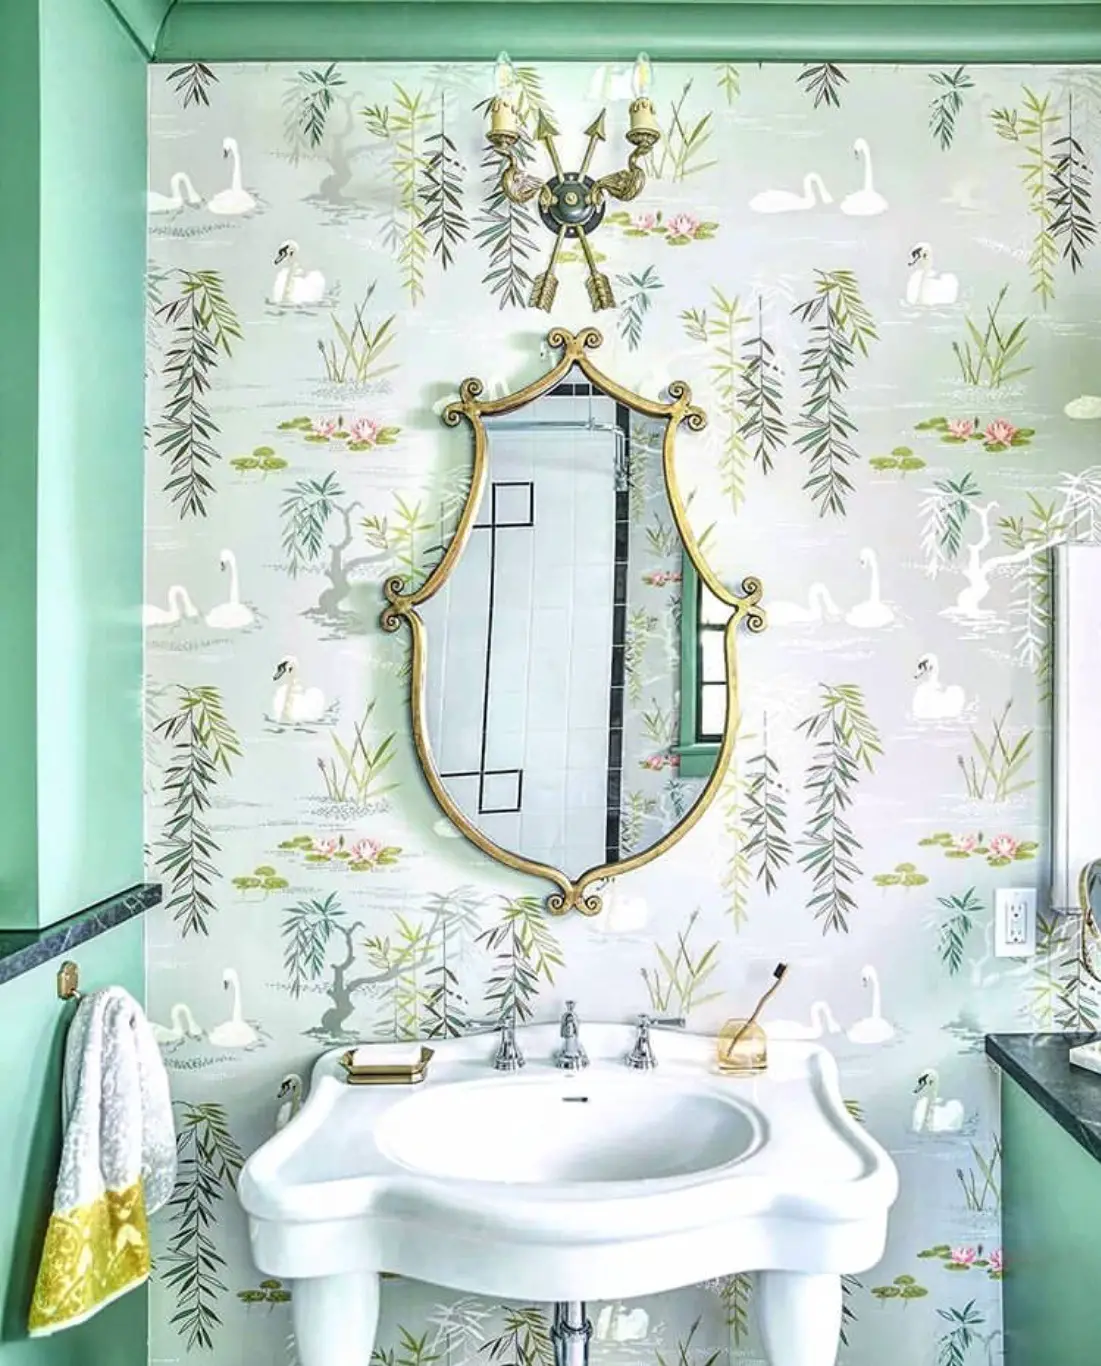 30+ Stunning Bathroom Wallpaper Ideas You'll Love - AAD9EAC5 D9A0 4D73 AE39 04DBAA2995B5